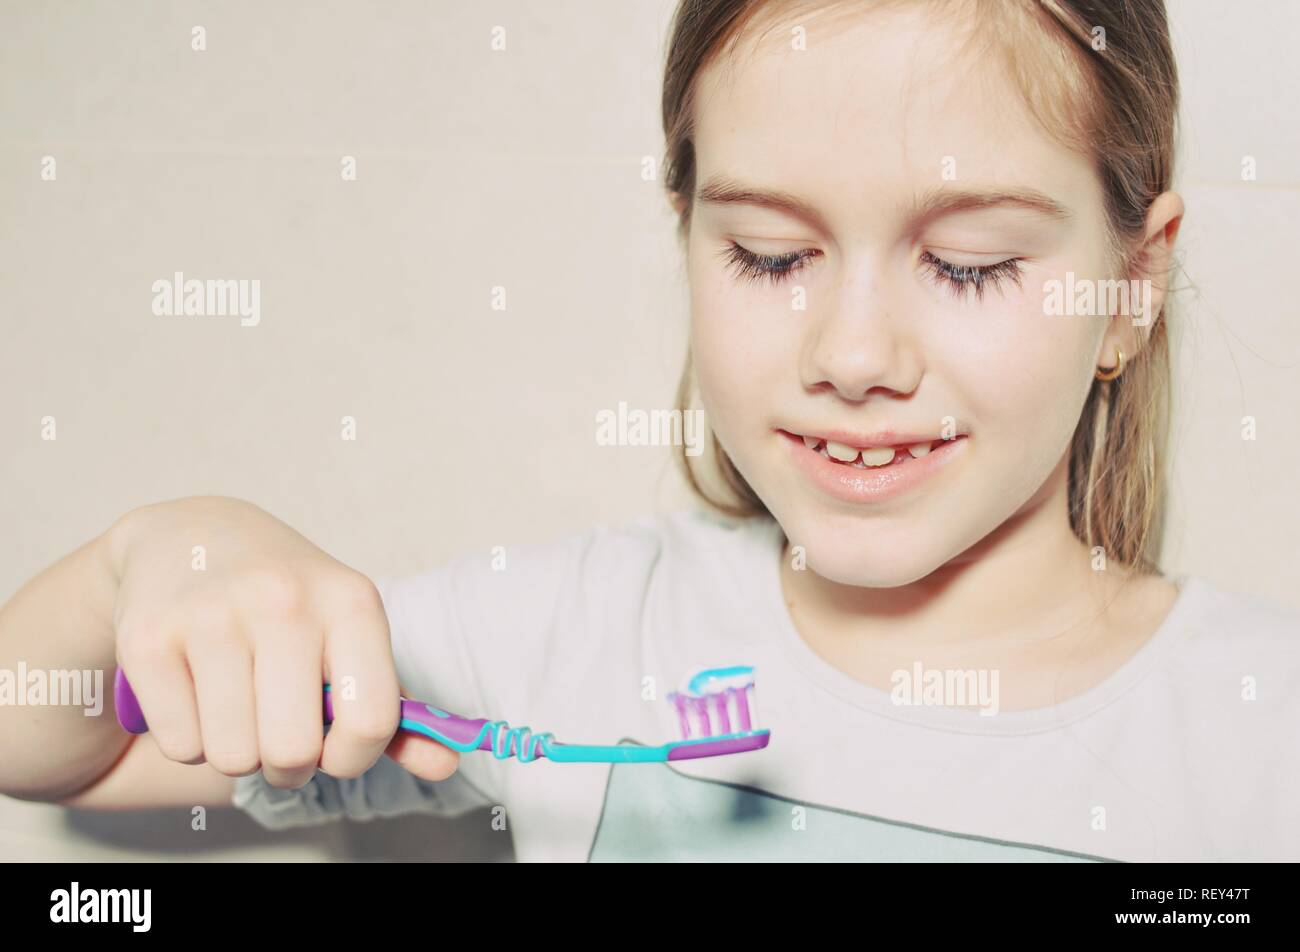 White caucasien enfant (Kid), fille, sourire et se préparer à se laver les dents avec une brosse à dents dans la salle de bains. Vue avant portrait. Copier du texte Banque D'Images